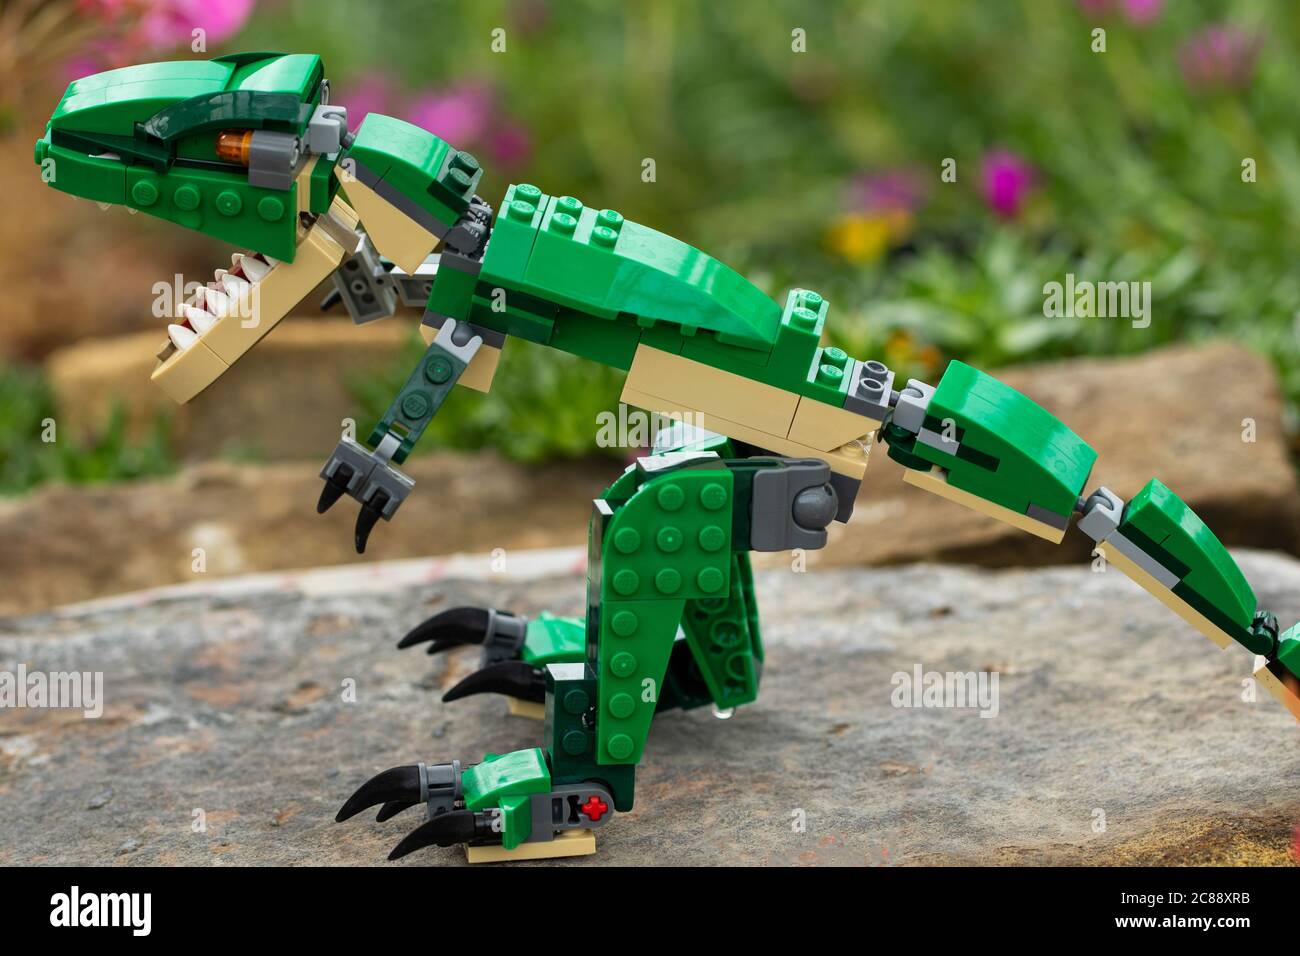 Green Lego Dinosaur se trouvait sur un rocher RHS Garden, Harrogate, North Yorkshire, Angleterre, Royaume-Uni. Banque D'Images